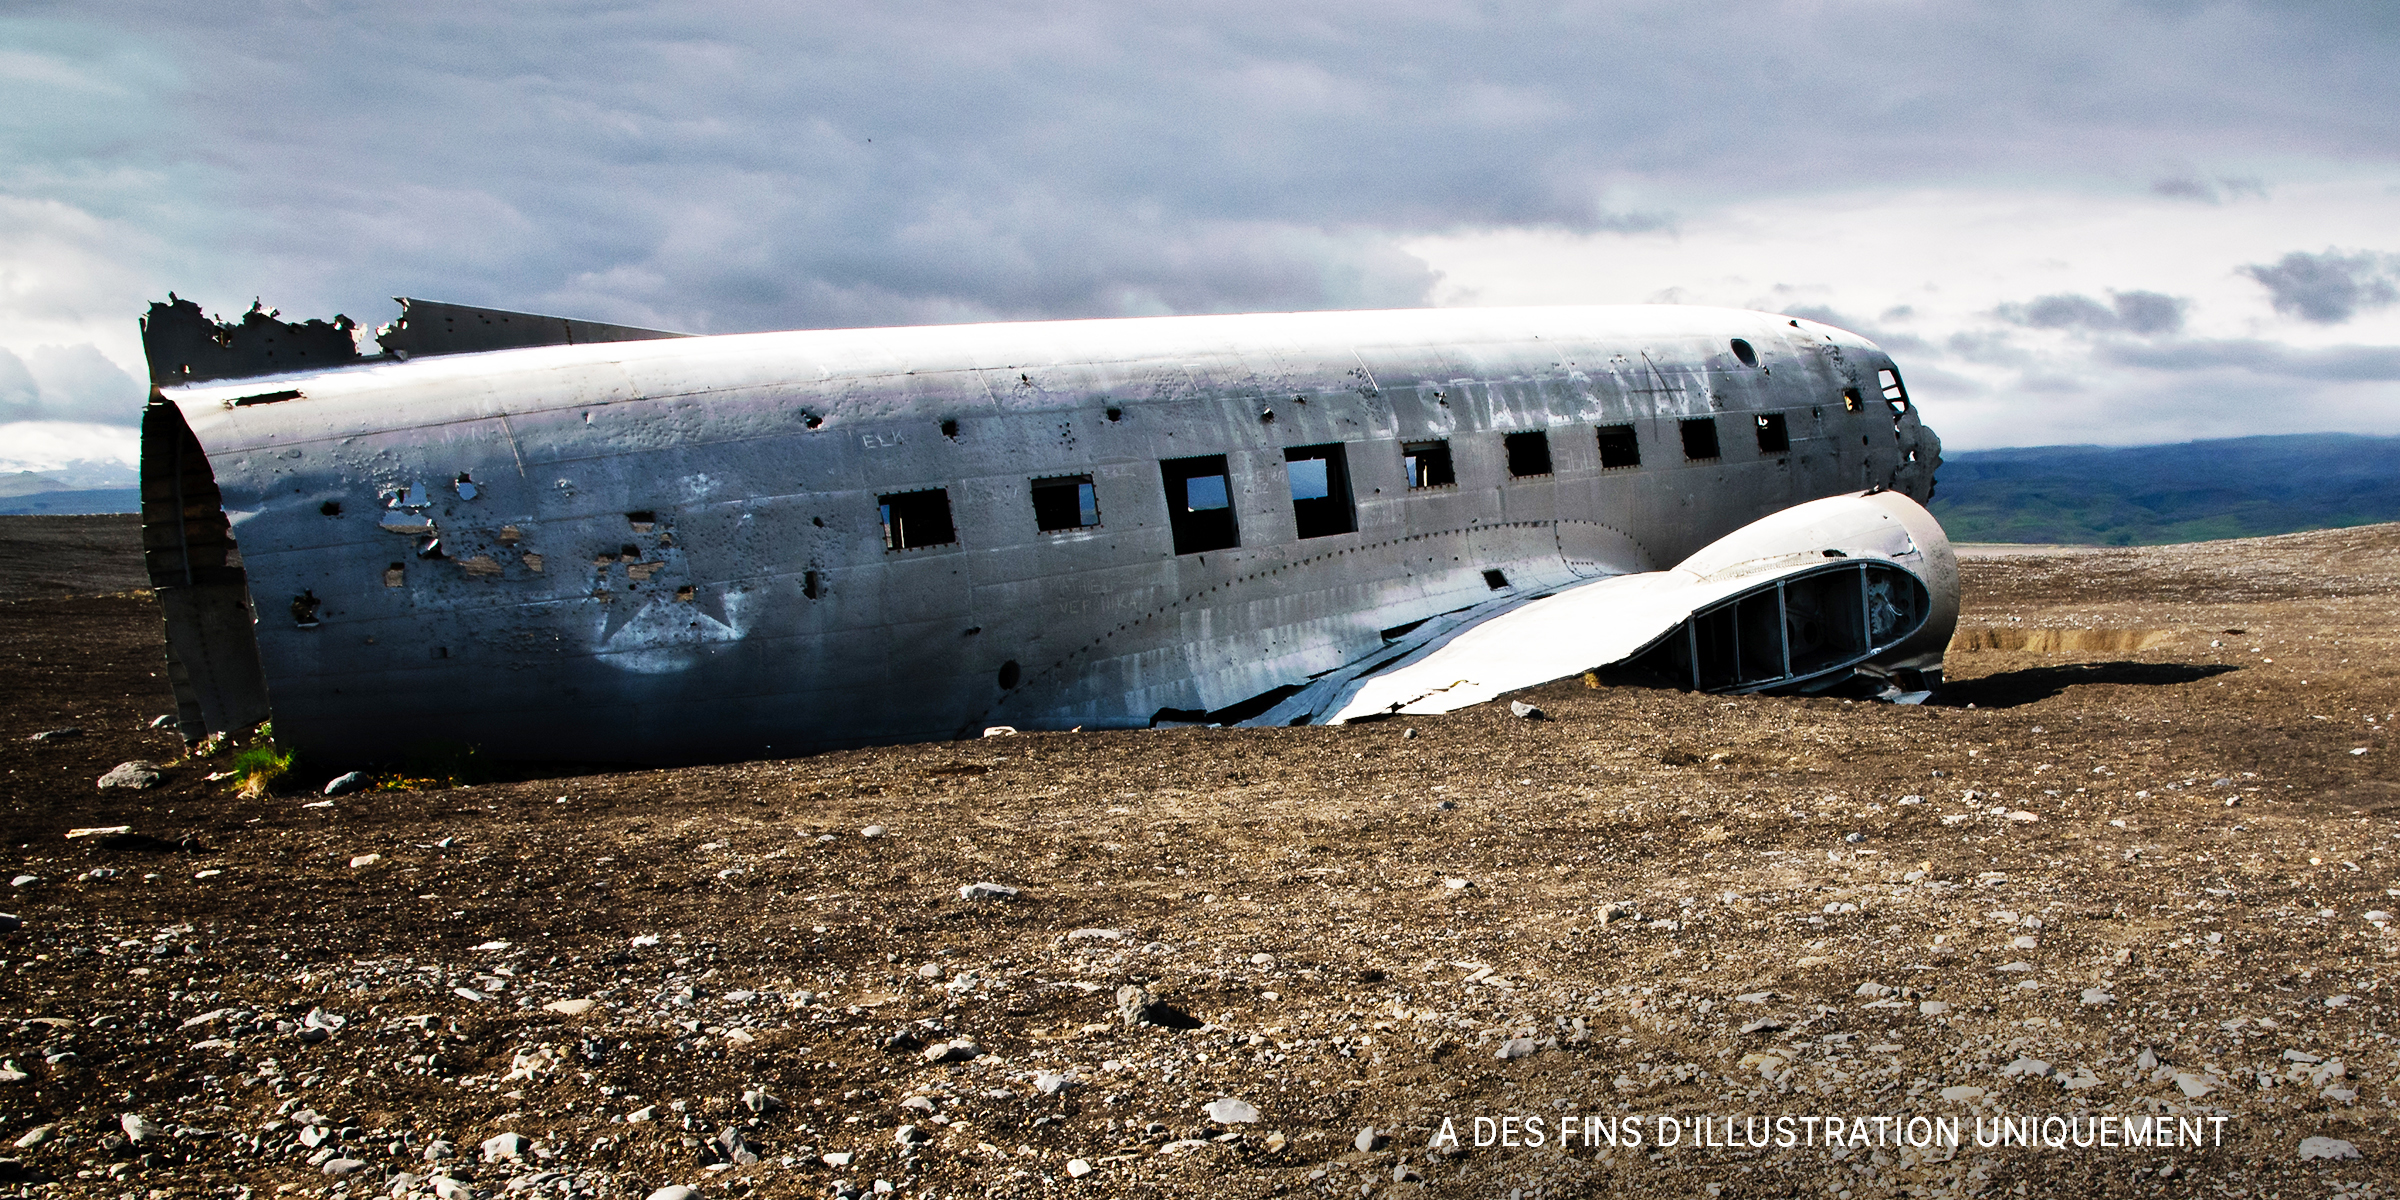 Débris après l'écrasement d'un avion | Source : Shutterstock